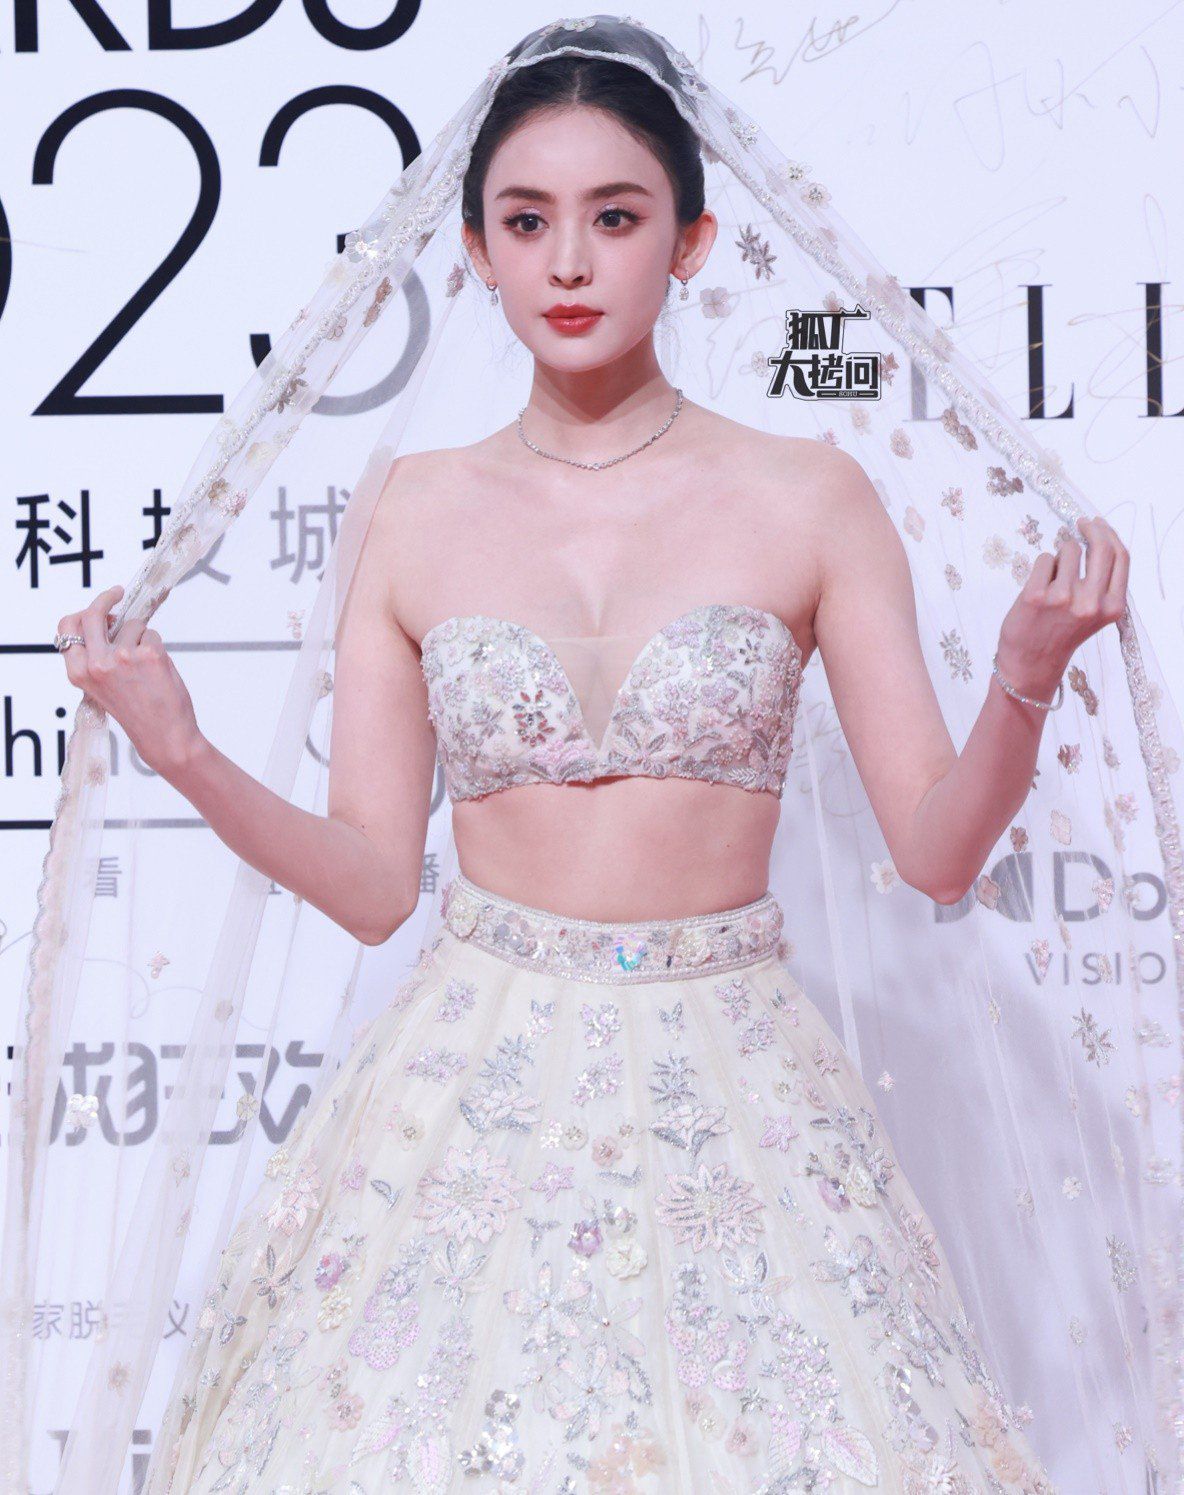 Trước đó, hashtag #Cổ Lực Na Trát hãy cưới tôi nhanh chóng trở thành từ khóa được tìm kiếm nhiều nhất trên Weibo khi Na Trát diện váy trắng như cô dâu xuất hiện trên thảm đỏ sự kiện Thịnh điển Elle.